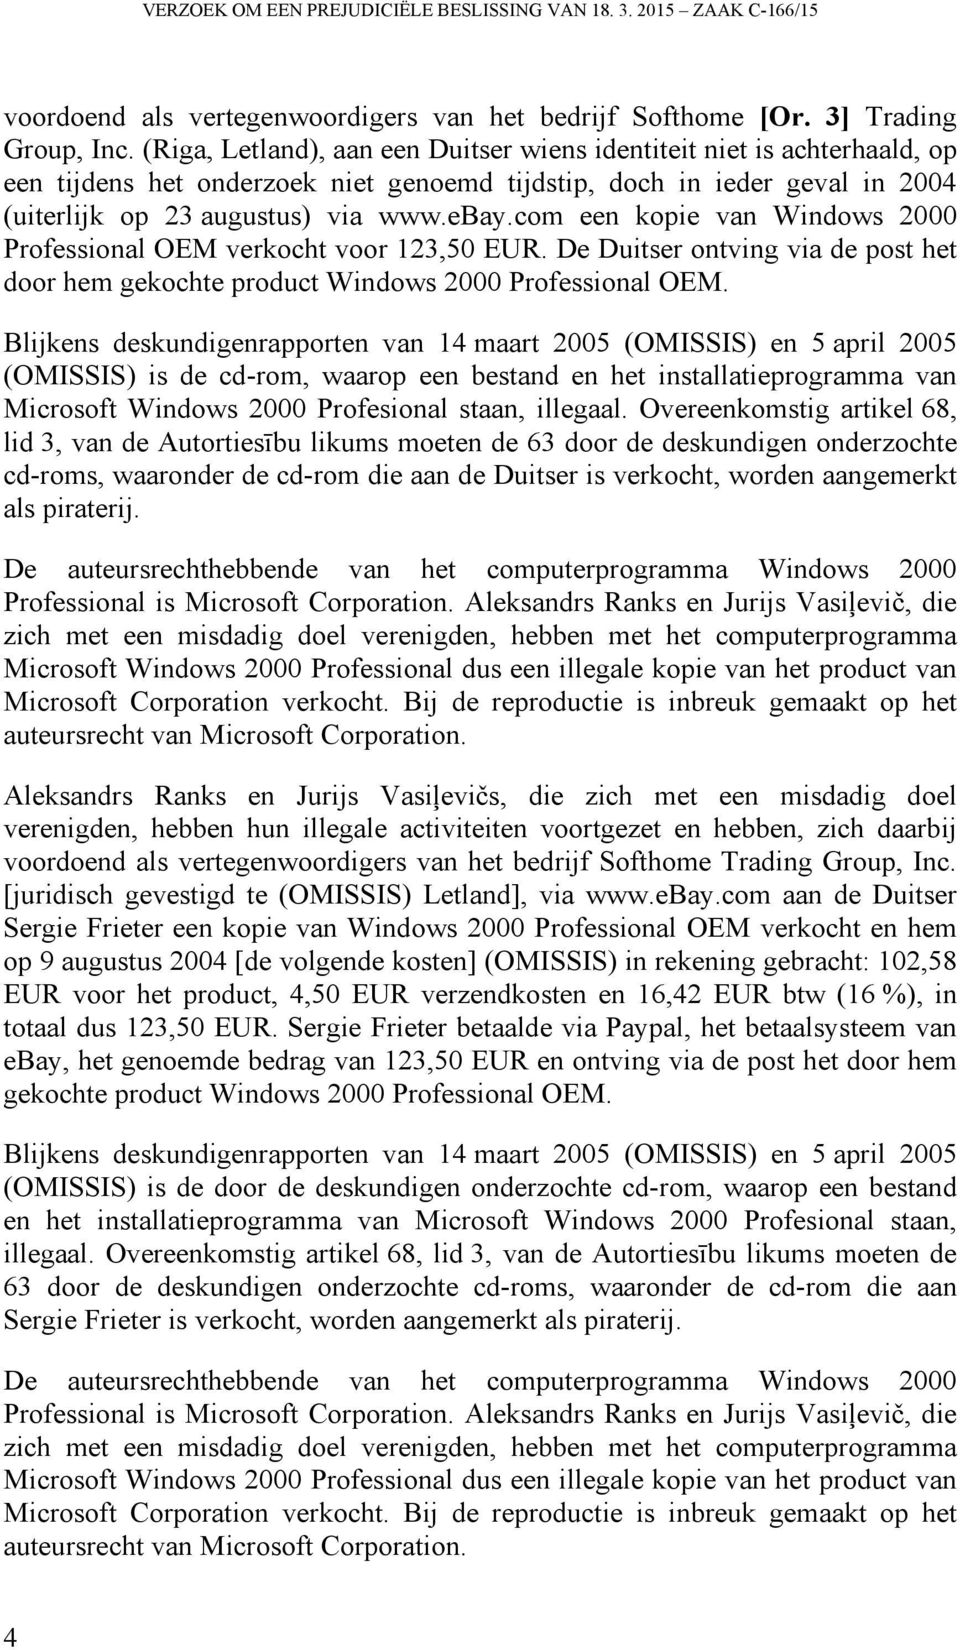 com een kopie van Windows 2000 Professional OEM verkocht voor 123,50 EUR. De Duitser ontving via de post het door hem gekochte product Windows 2000 Professional OEM.